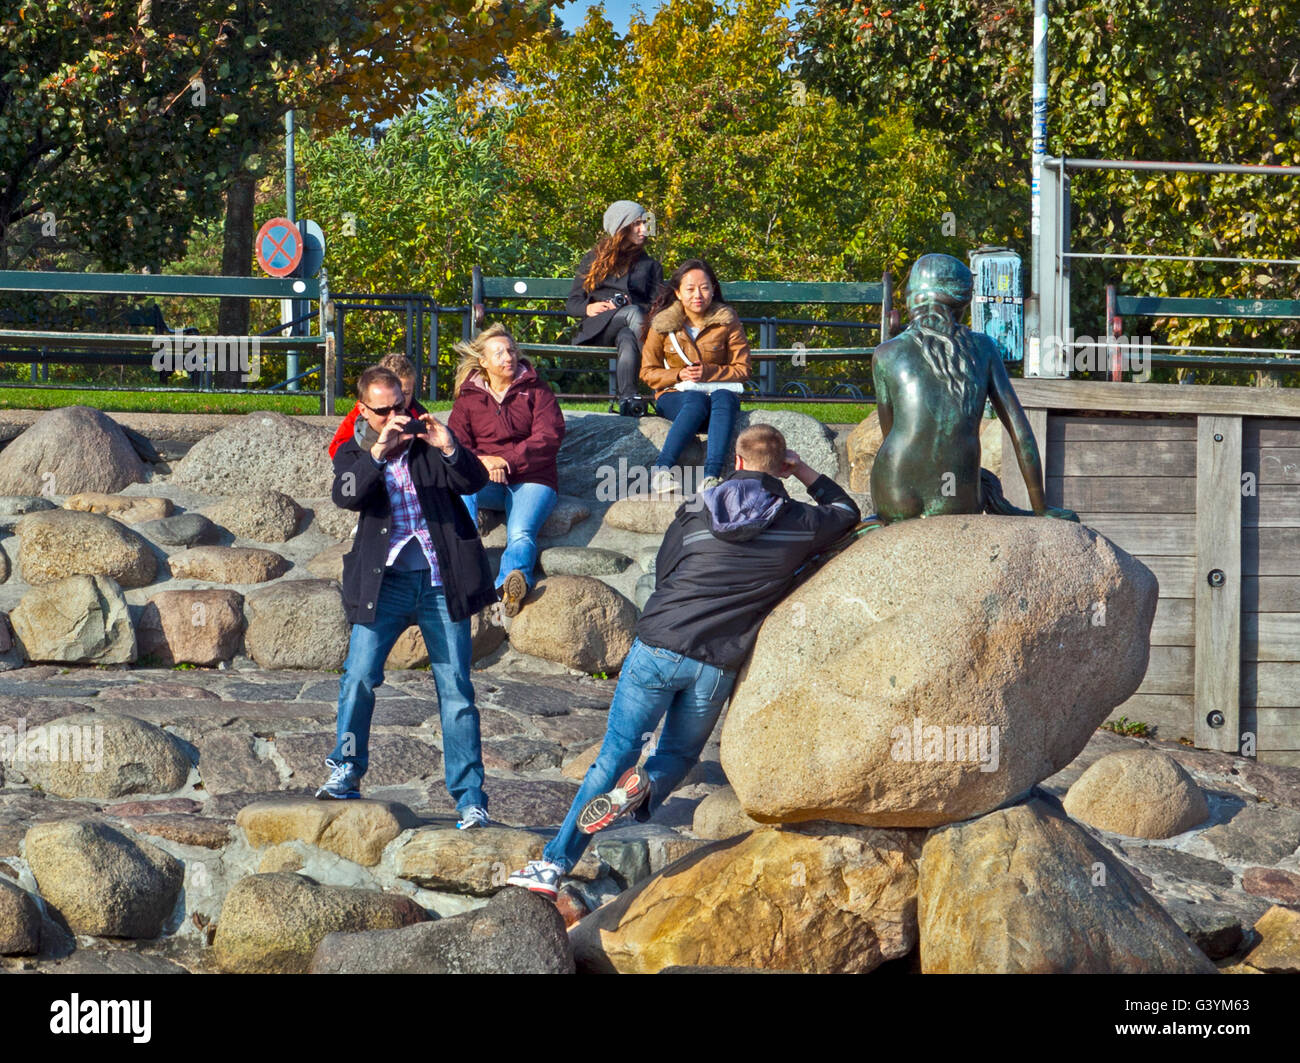 Copenhague, Danemark : les touristes jouant autour de la statue de la Petite Sirène, à Langelinie. promenade au bord de l'eau Banque D'Images